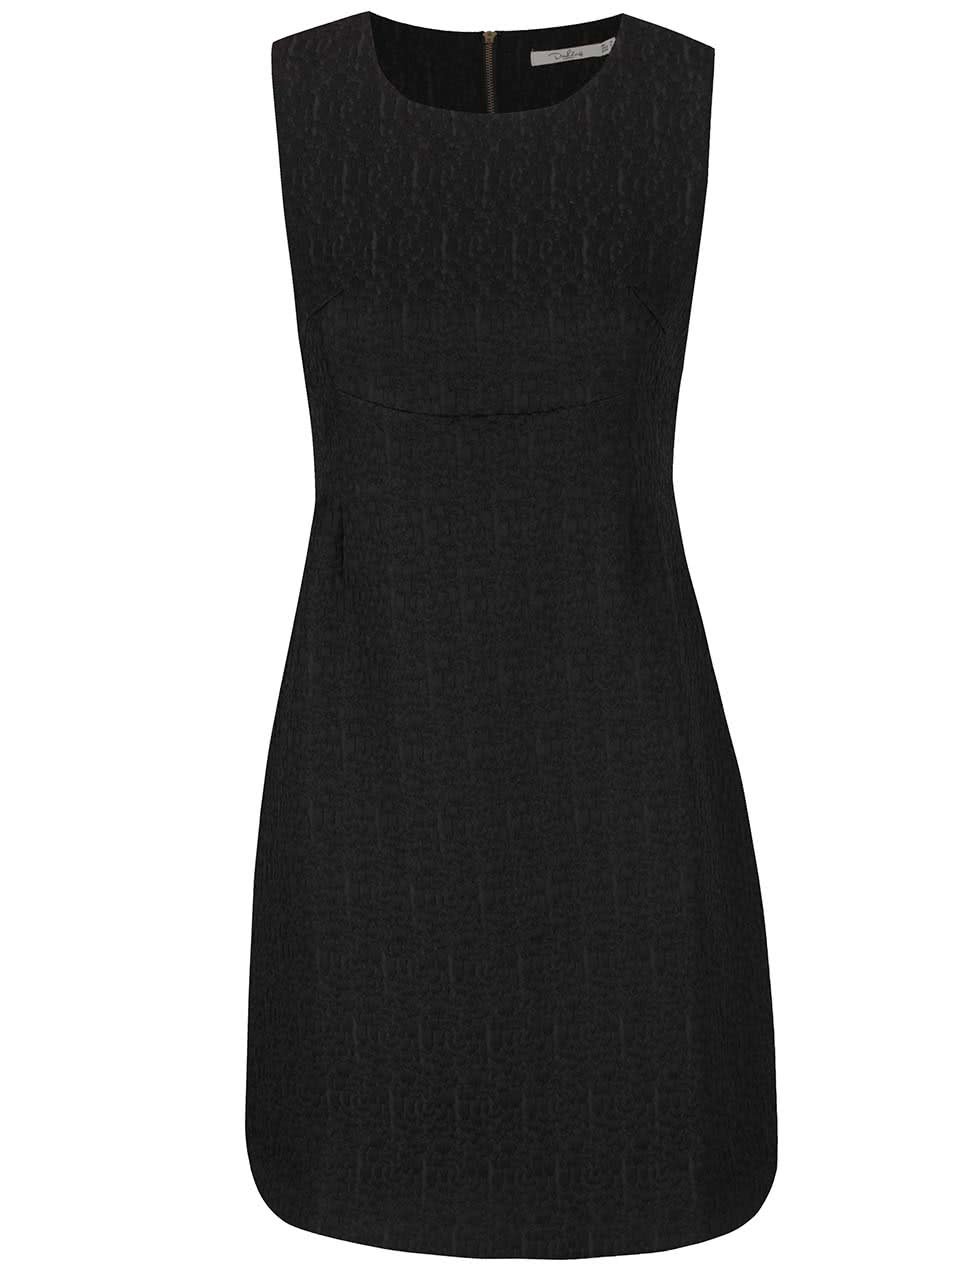 Černé strukturované šaty Darling Jaime